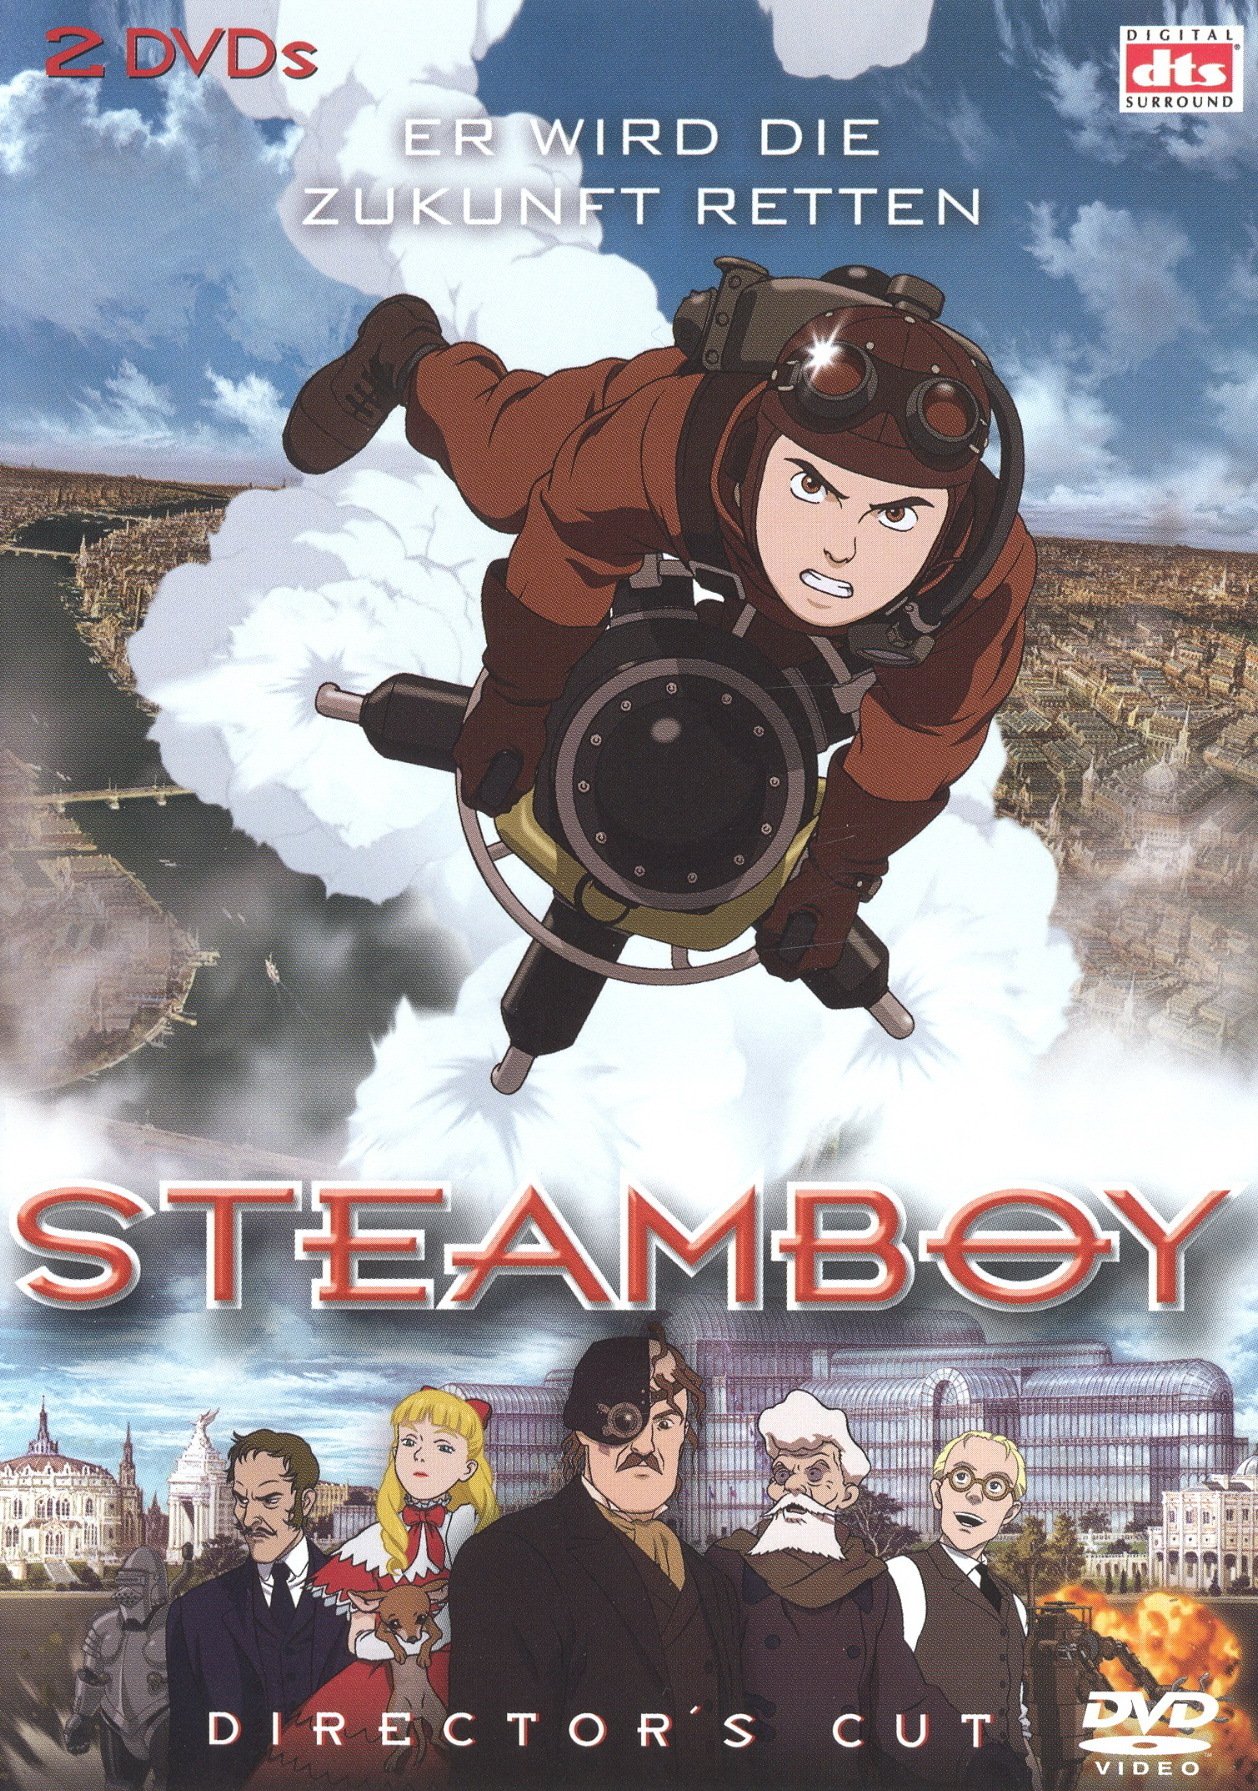 Plakat von "Steamboy"